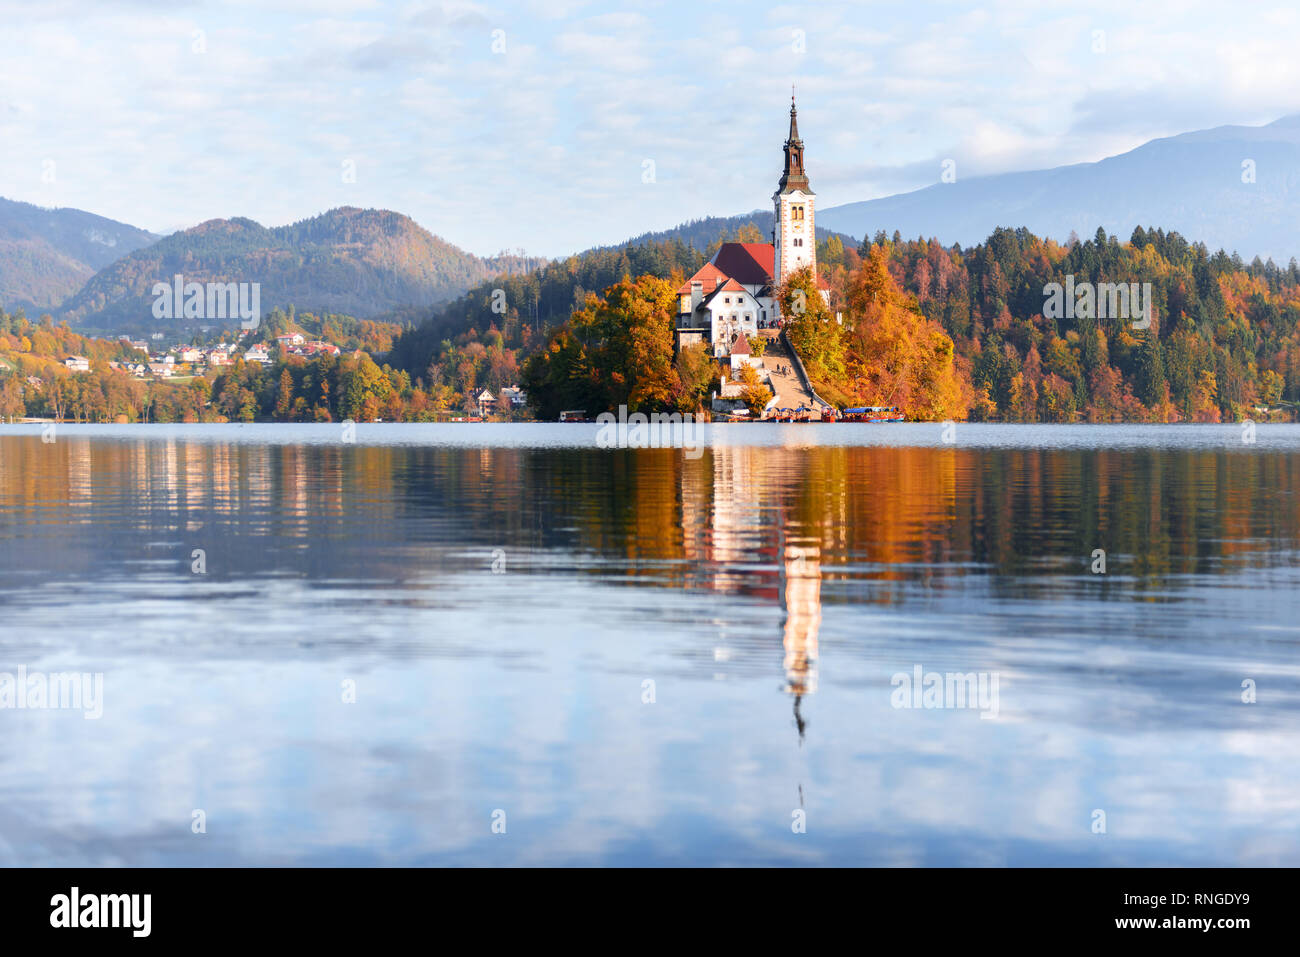 Bunte Herbst Blick auf See von Bled in den Julischen Alpen, Slowenien. Wallfahrtskirche der Himmelfahrt der Maria im Vordergrund. Landschaftsfotografie Stockfoto